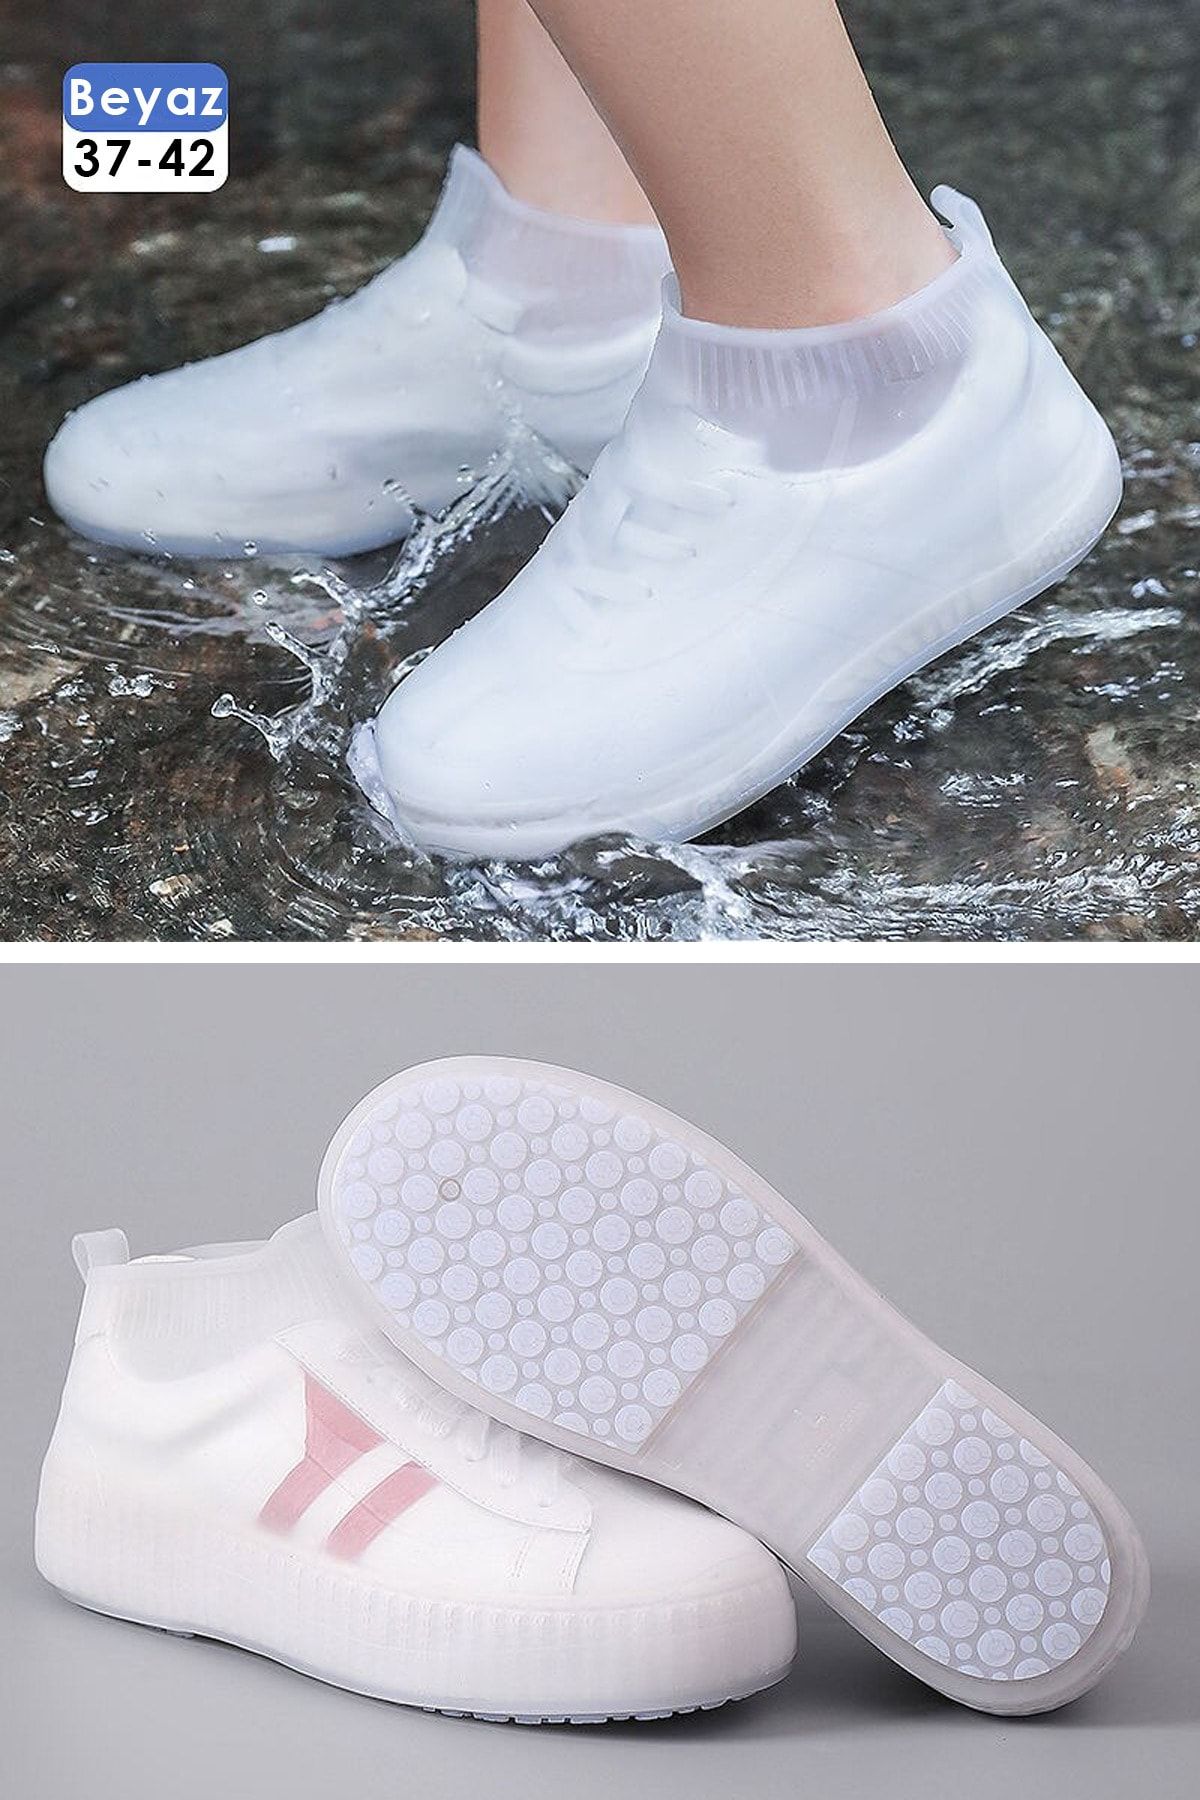 TechnoSmart Beyaz - Ultra Esnek Silikon Yağmur Koruyucu Ayakkabı Kılıfı Taban Takviye Kaymaz Su Kir Geçirmez